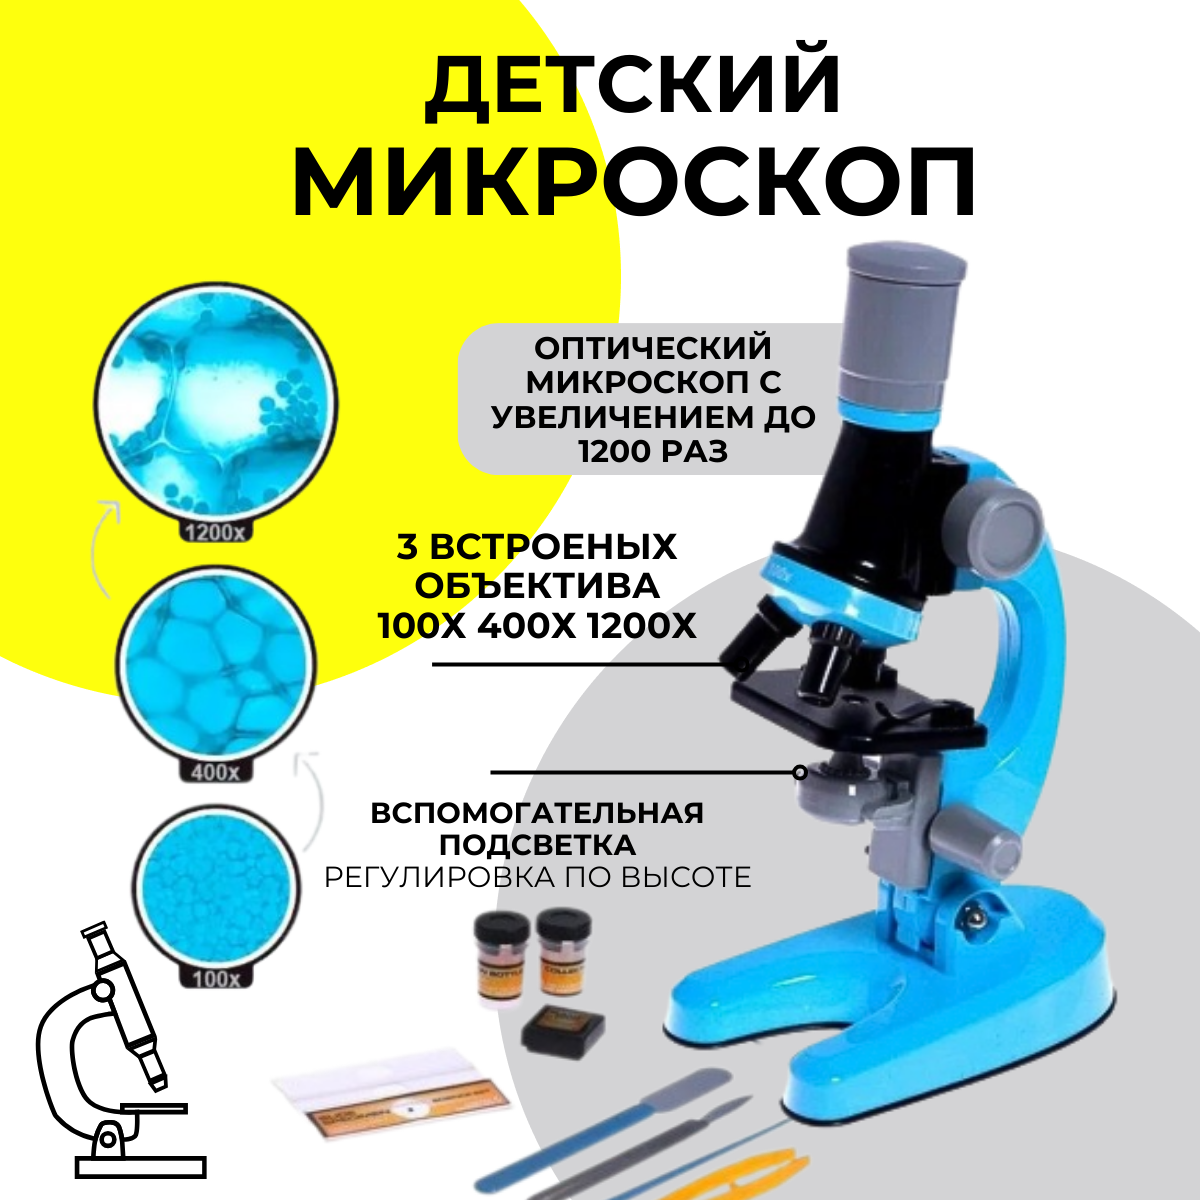 Микроскоп MKB4849708 детский Юный ботаник с подсветкой, кратность х100, х400, х1200 микроскоп юный исследователь кратность увеличения 1200х 400х 100х с подсветкой